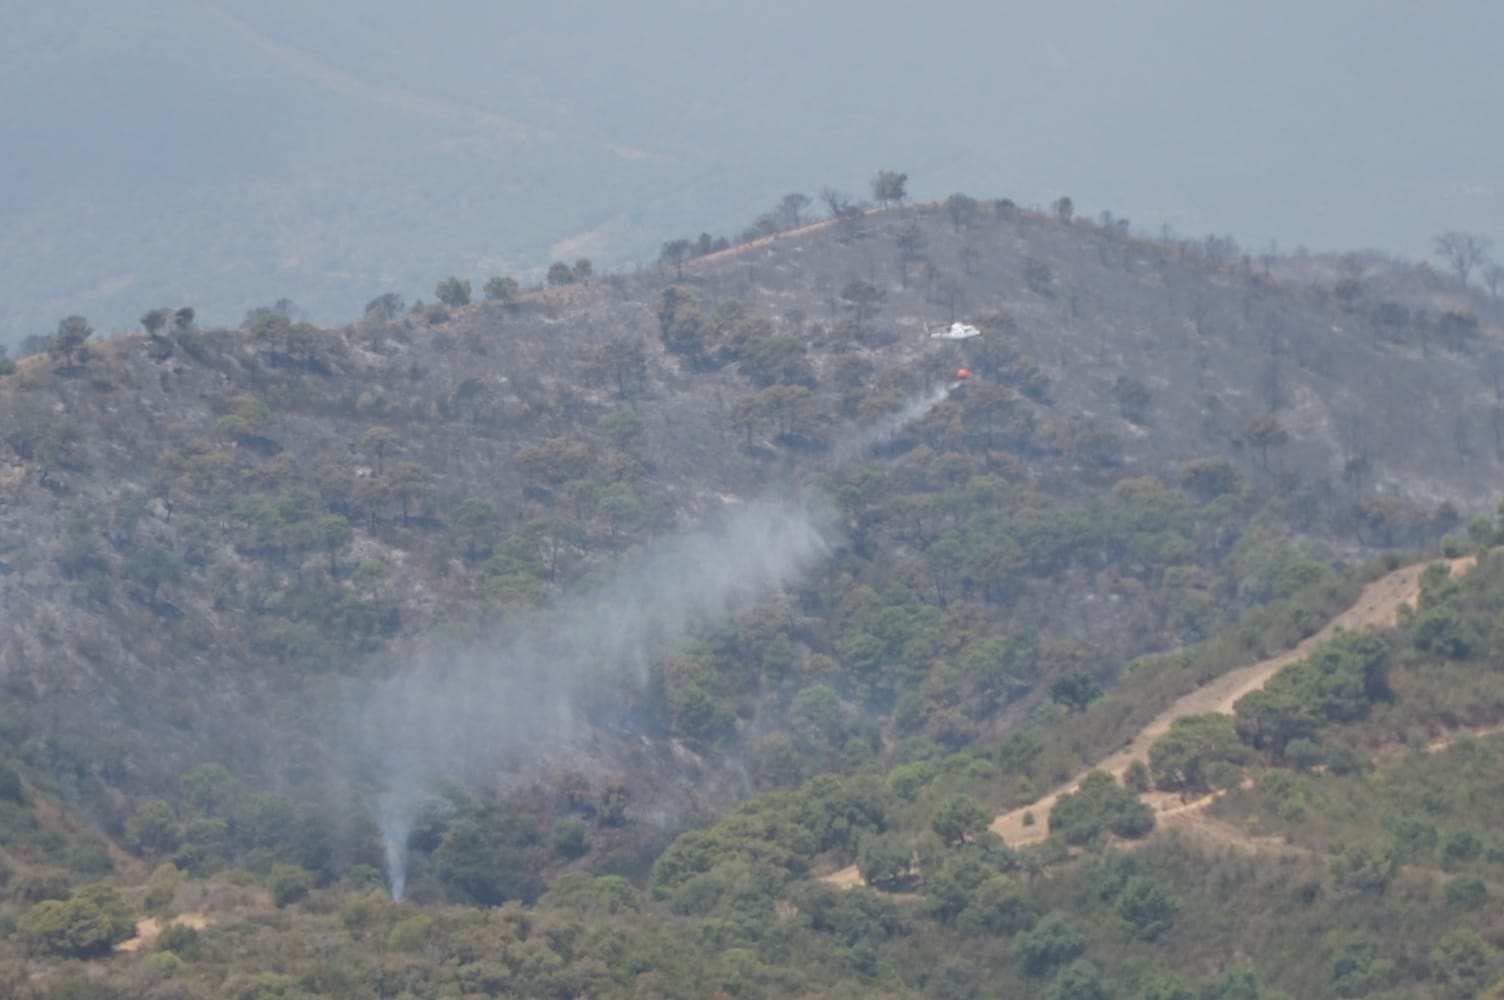 Imagen secundaria 1 - El incendio de Estepona ha calcinado ya 300 hectáreas pero algunos vecinos ya regresan a sus casas